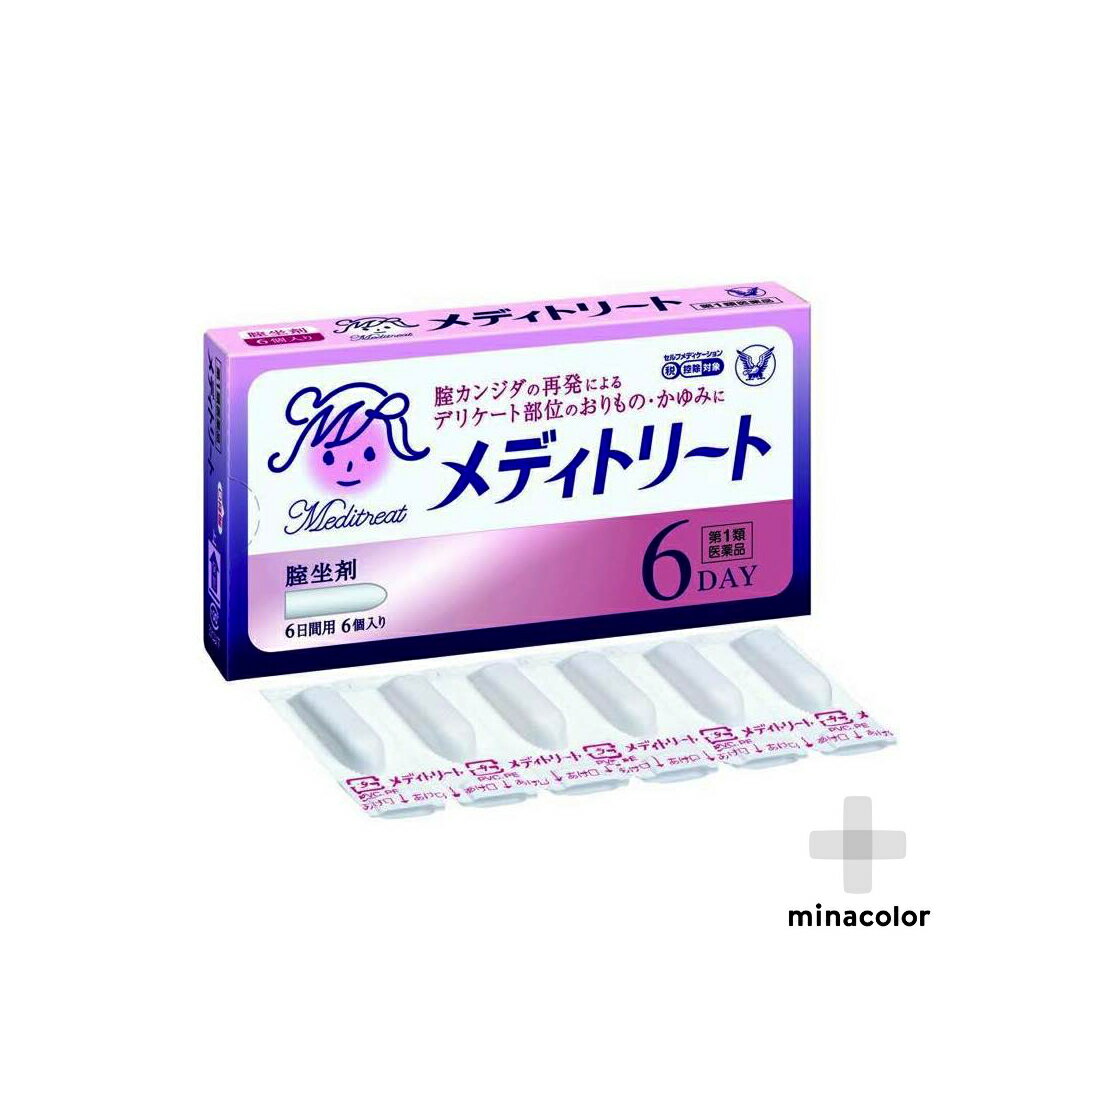 【第1類医薬品】 メディトリート 6個 膣カンジダ 再発治療薬 市販